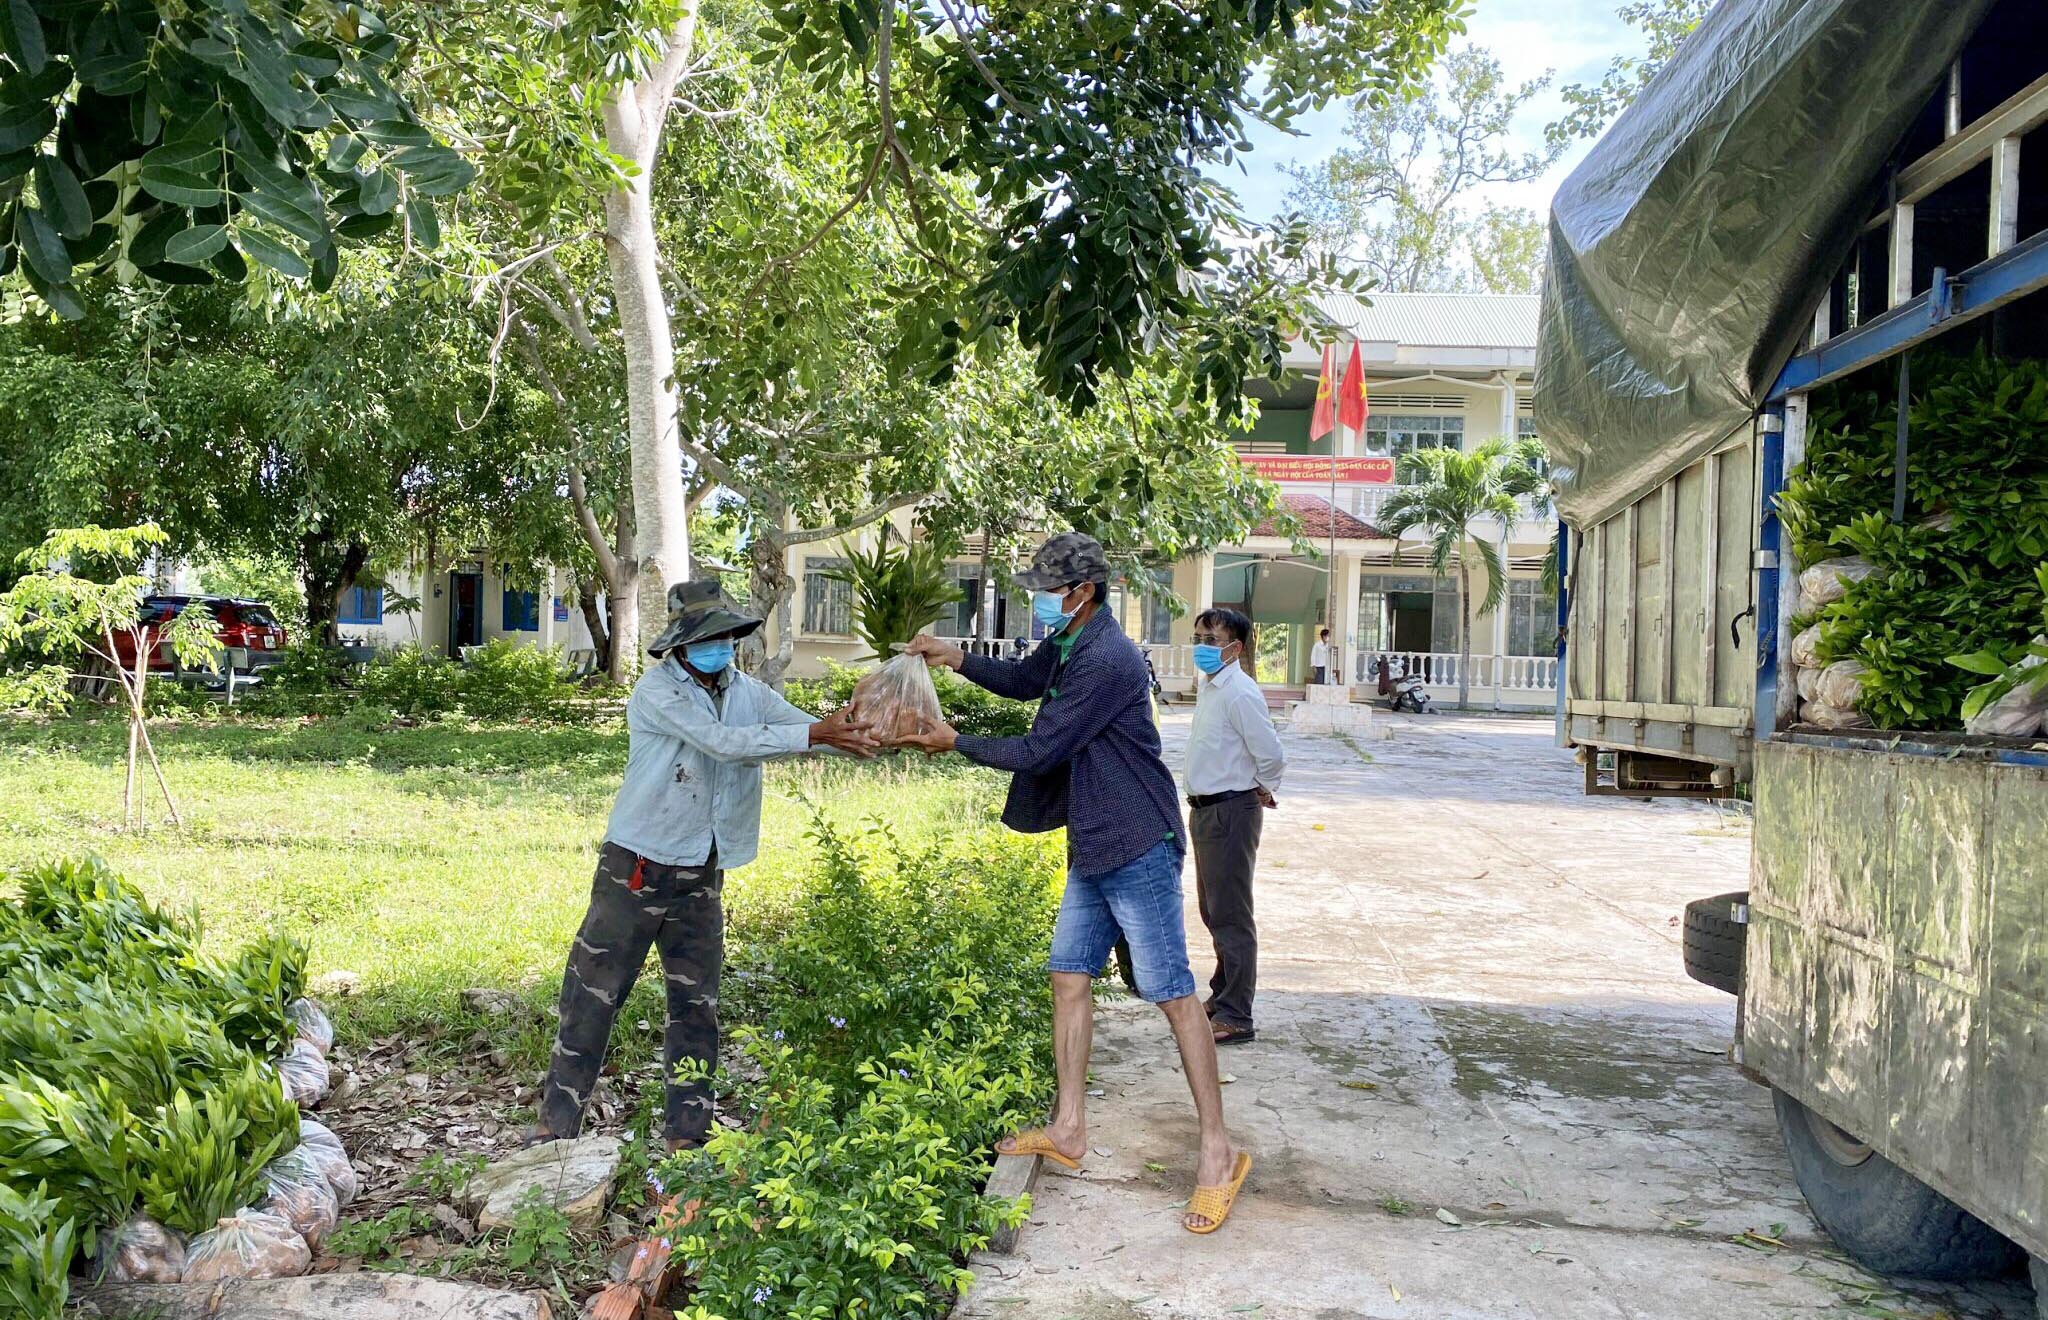 Hạt Kiểm lâm huyện Krông Pa cấp cây giống cho người dân xã Đất Bằng để trồng rừng. Ảnh: Lê Nam